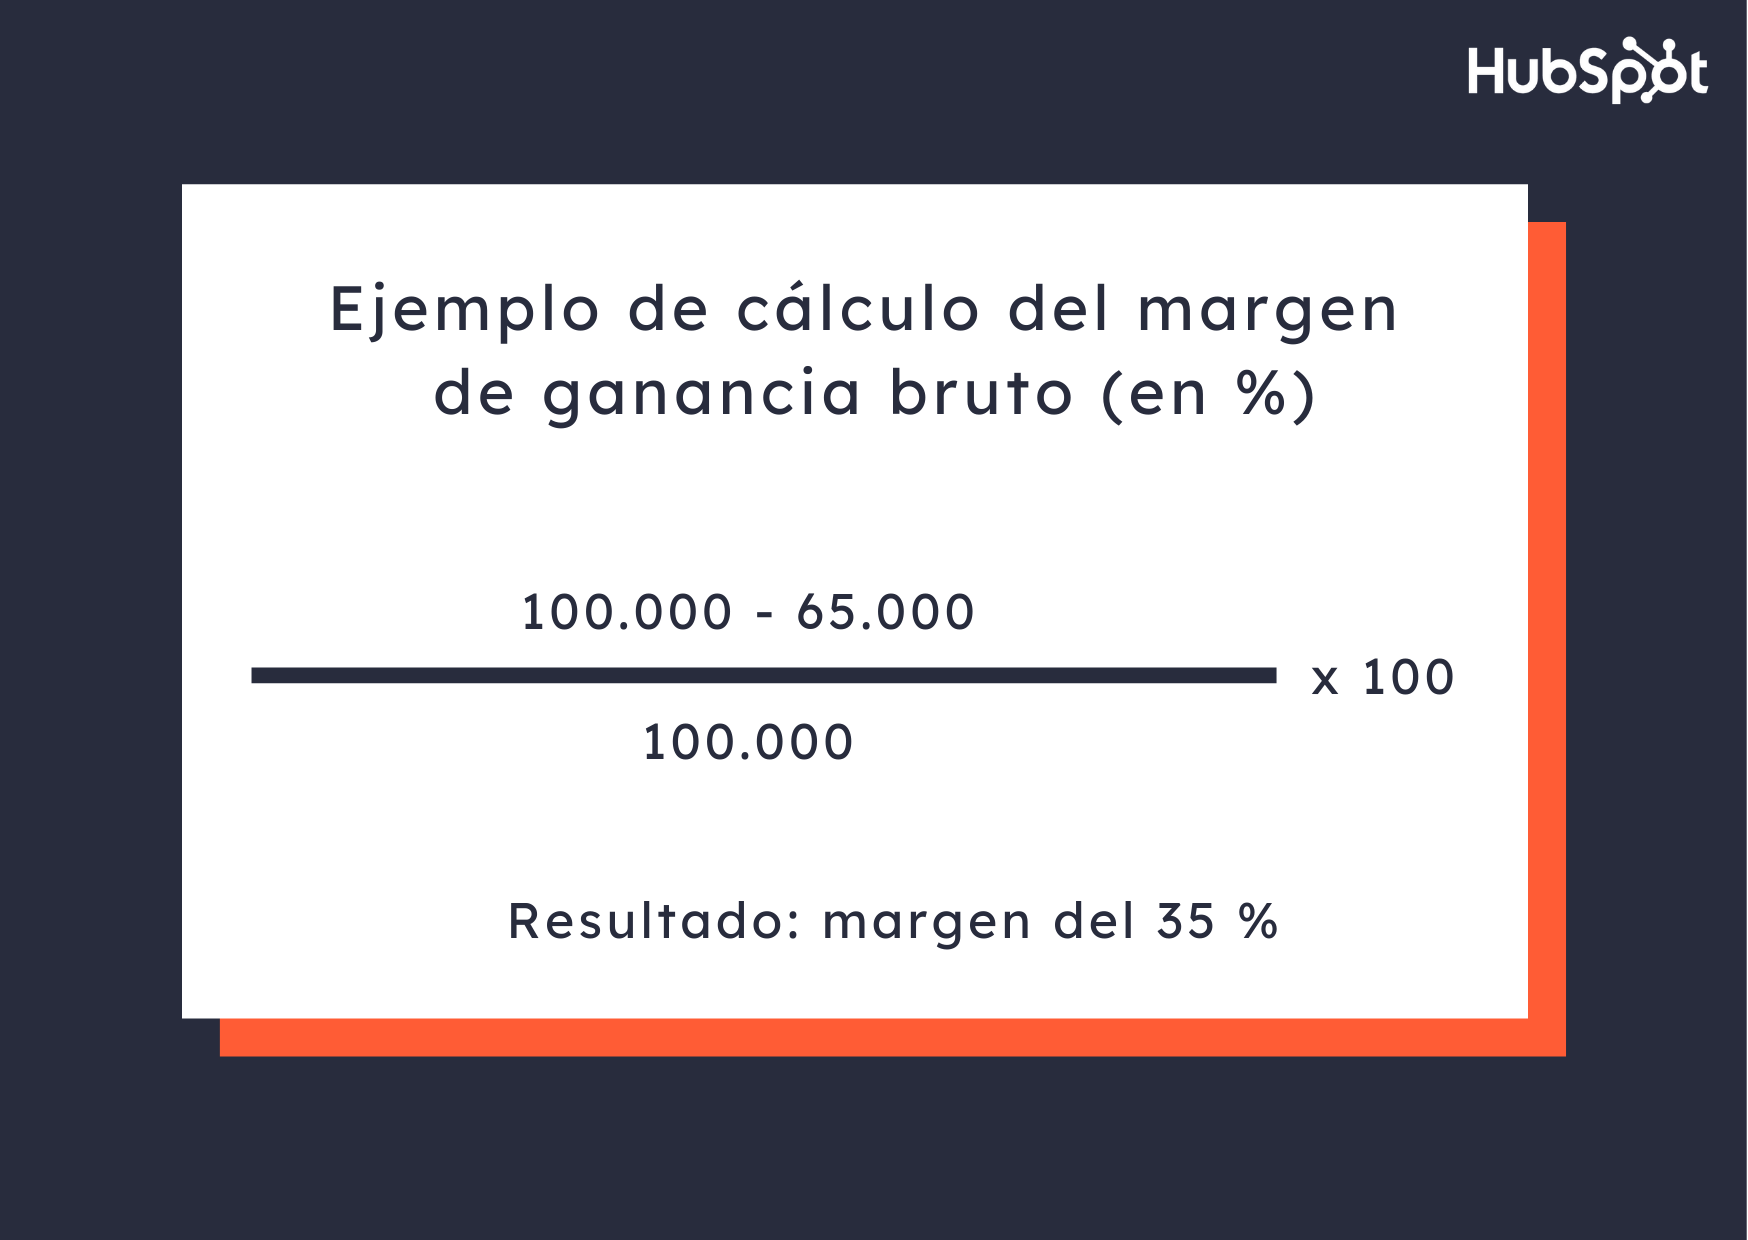 Ejemplo de cálculo del margen de ganancia de un producto (bruto y en porcentaje)